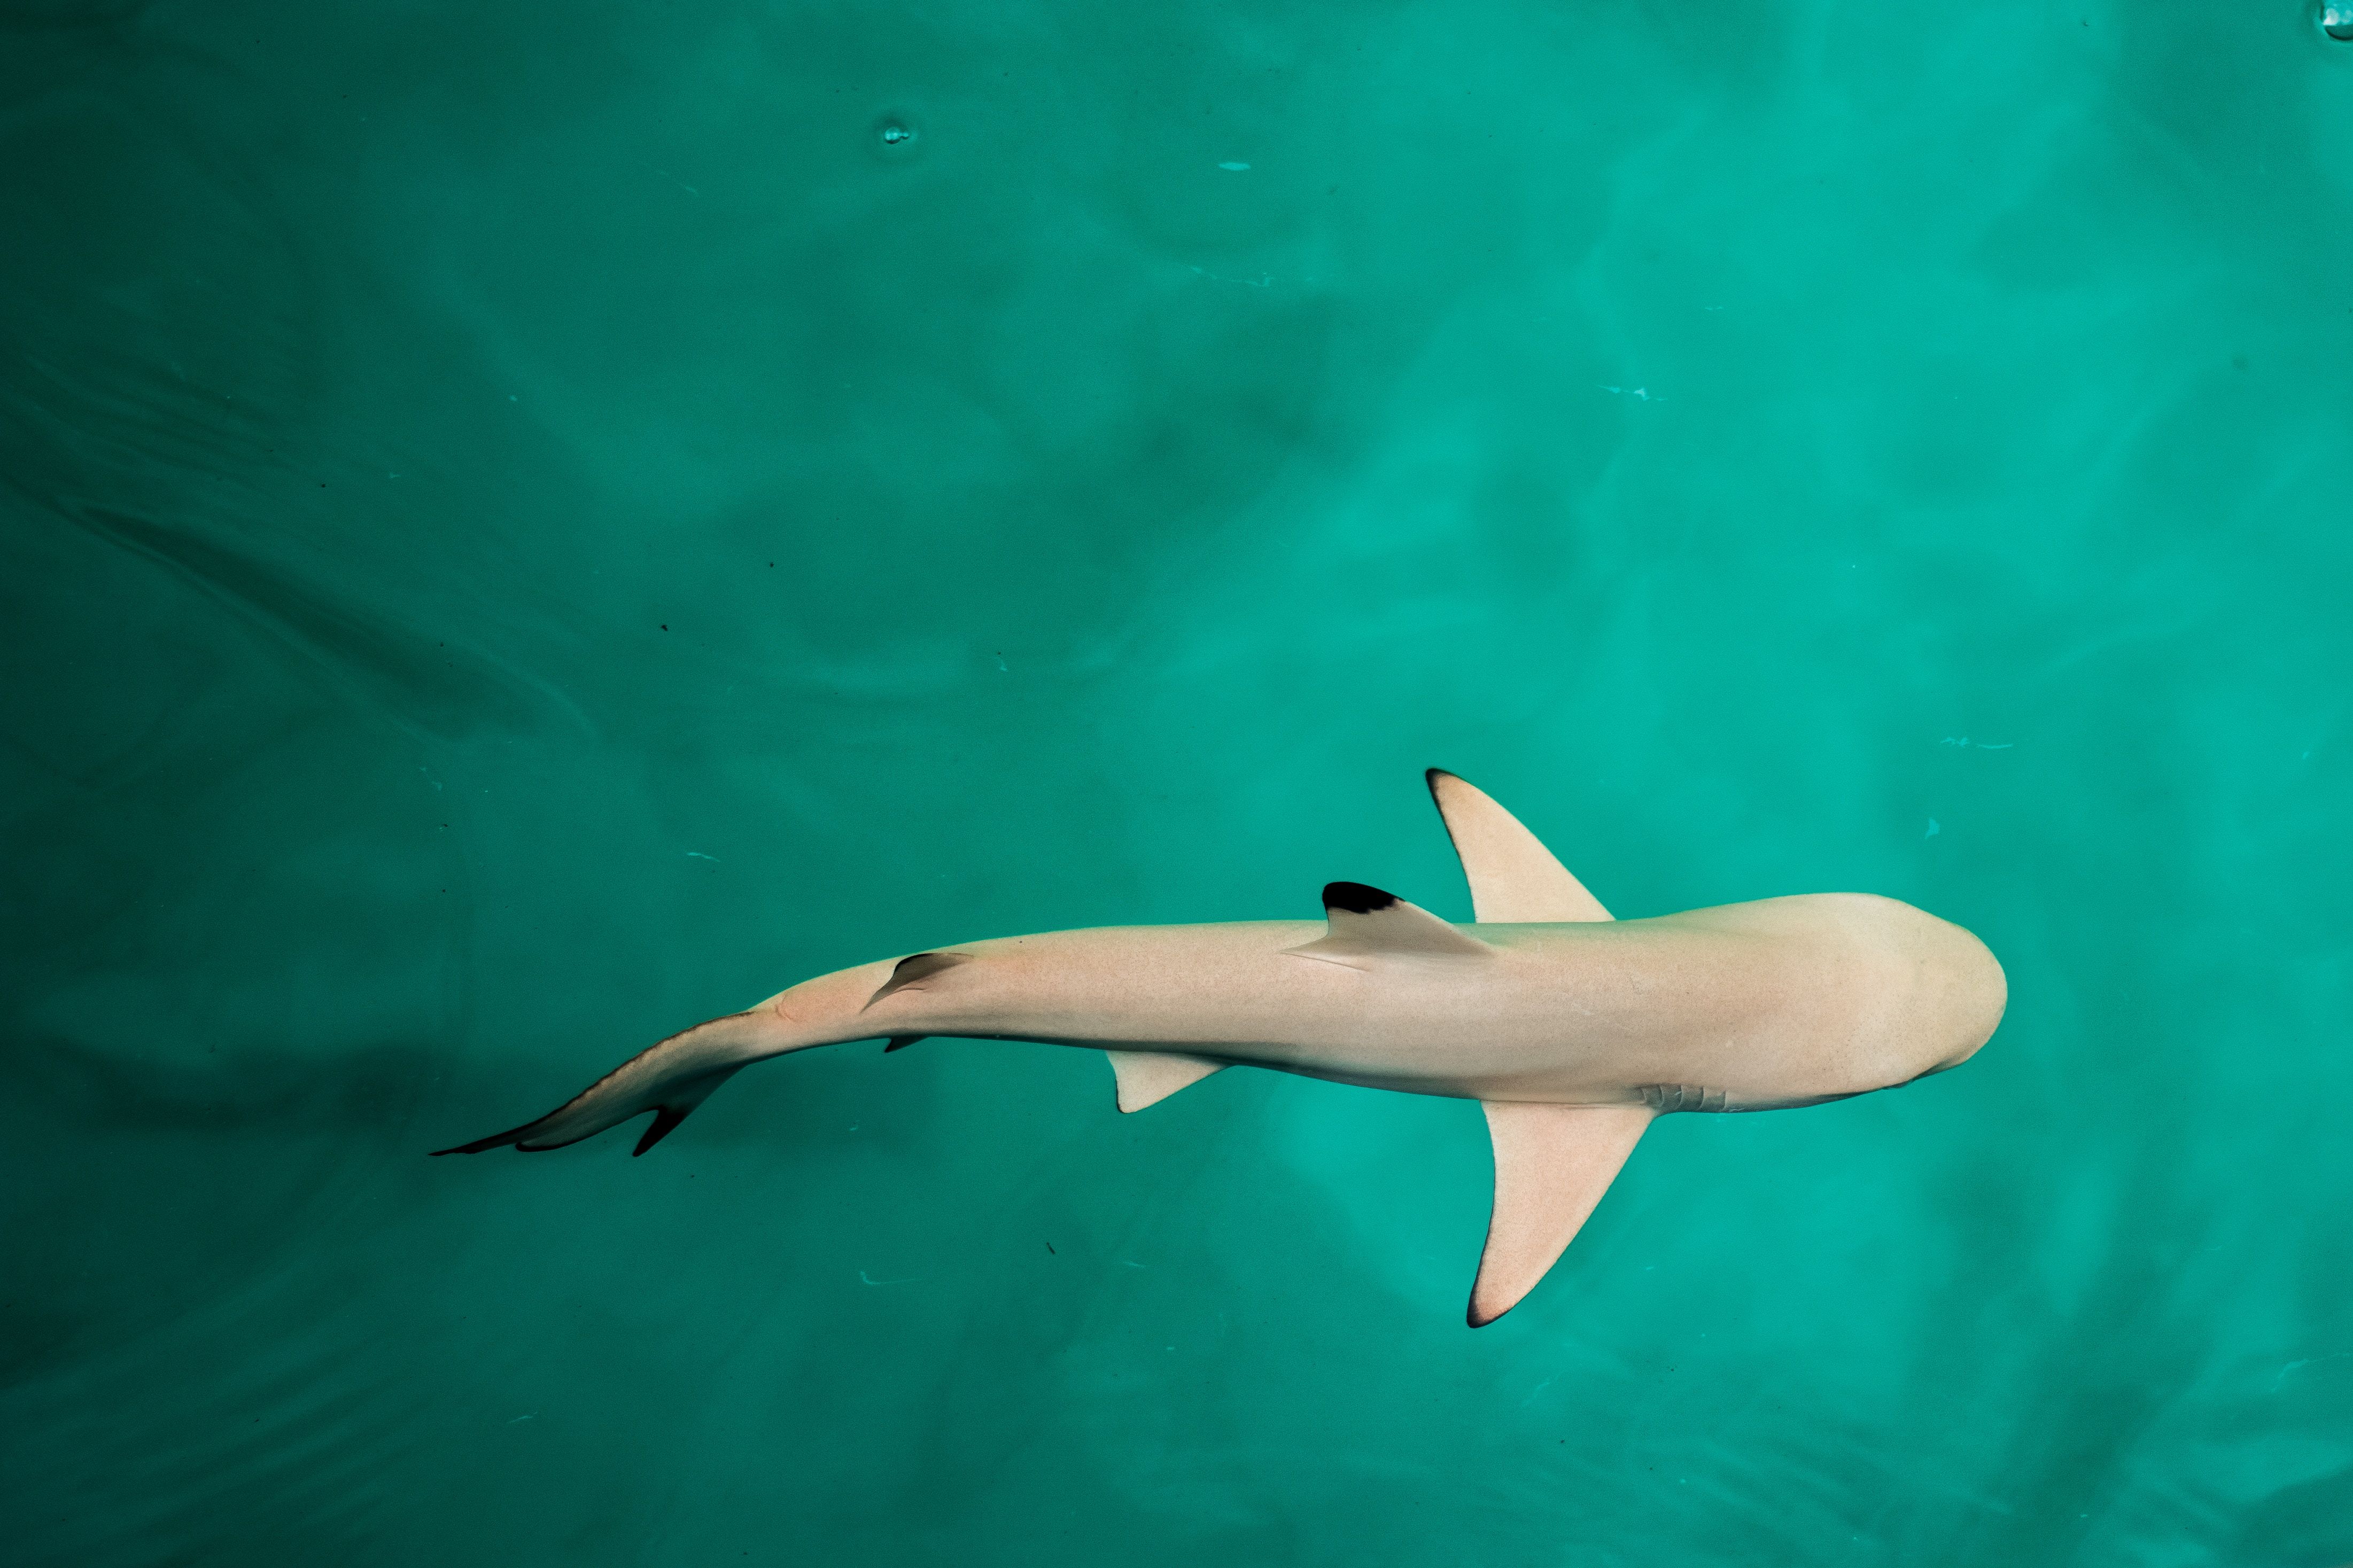  Hai Hintergrundbild 4403x2935. Kostenlose Hintergrundbilder Weißer Und Schwarzer Hai im Wasser, Bilder Für Ihren Desktop Und Fotos